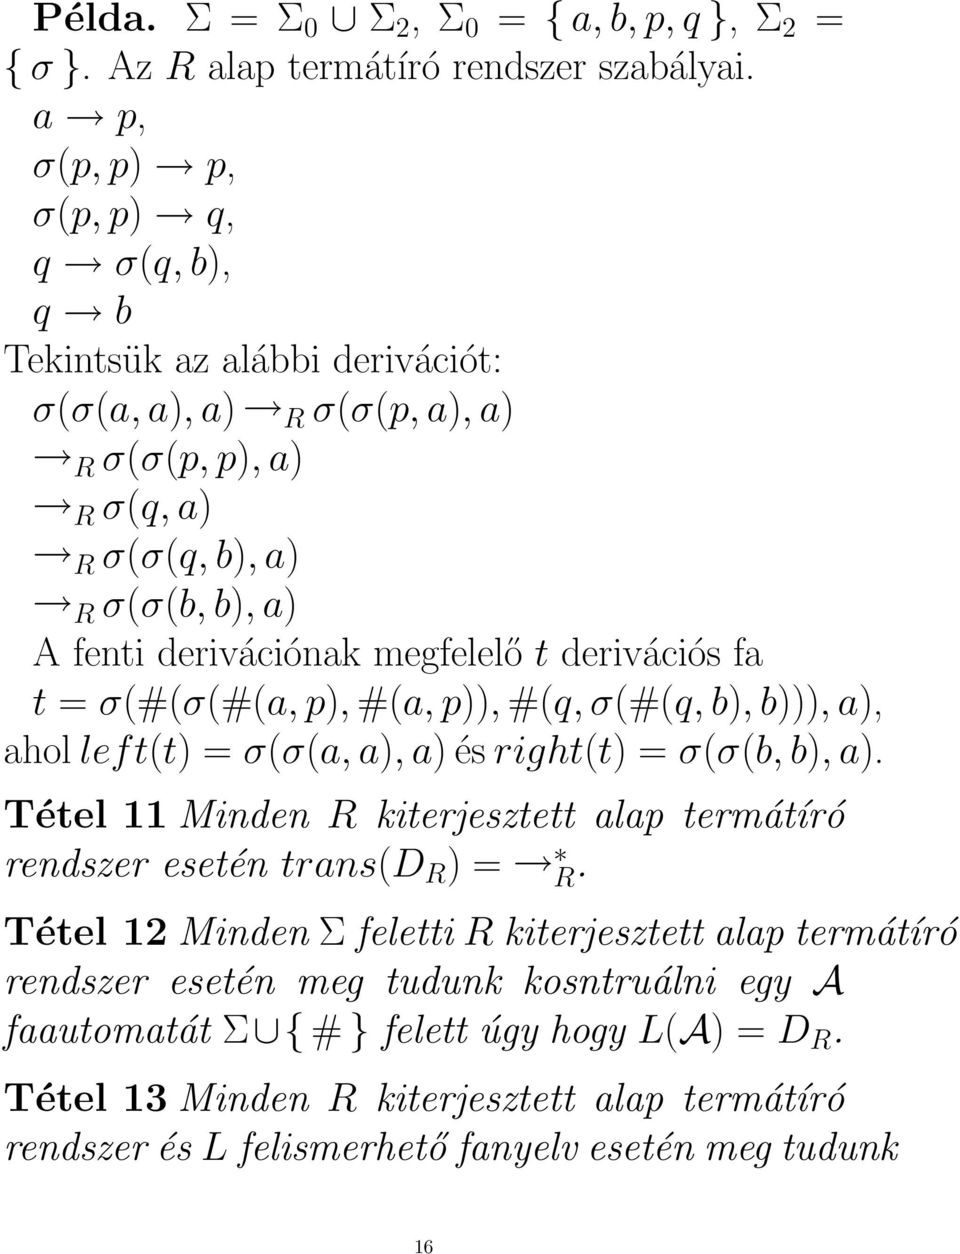 megfelelő t derivációs fa t = σ(#(σ(#(a, p), #(a, p)), #(q, σ(#(q, b), b))), a), ahol left(t) = σ(σ(a, a), a) és right(t) = σ(σ(b, b), a).